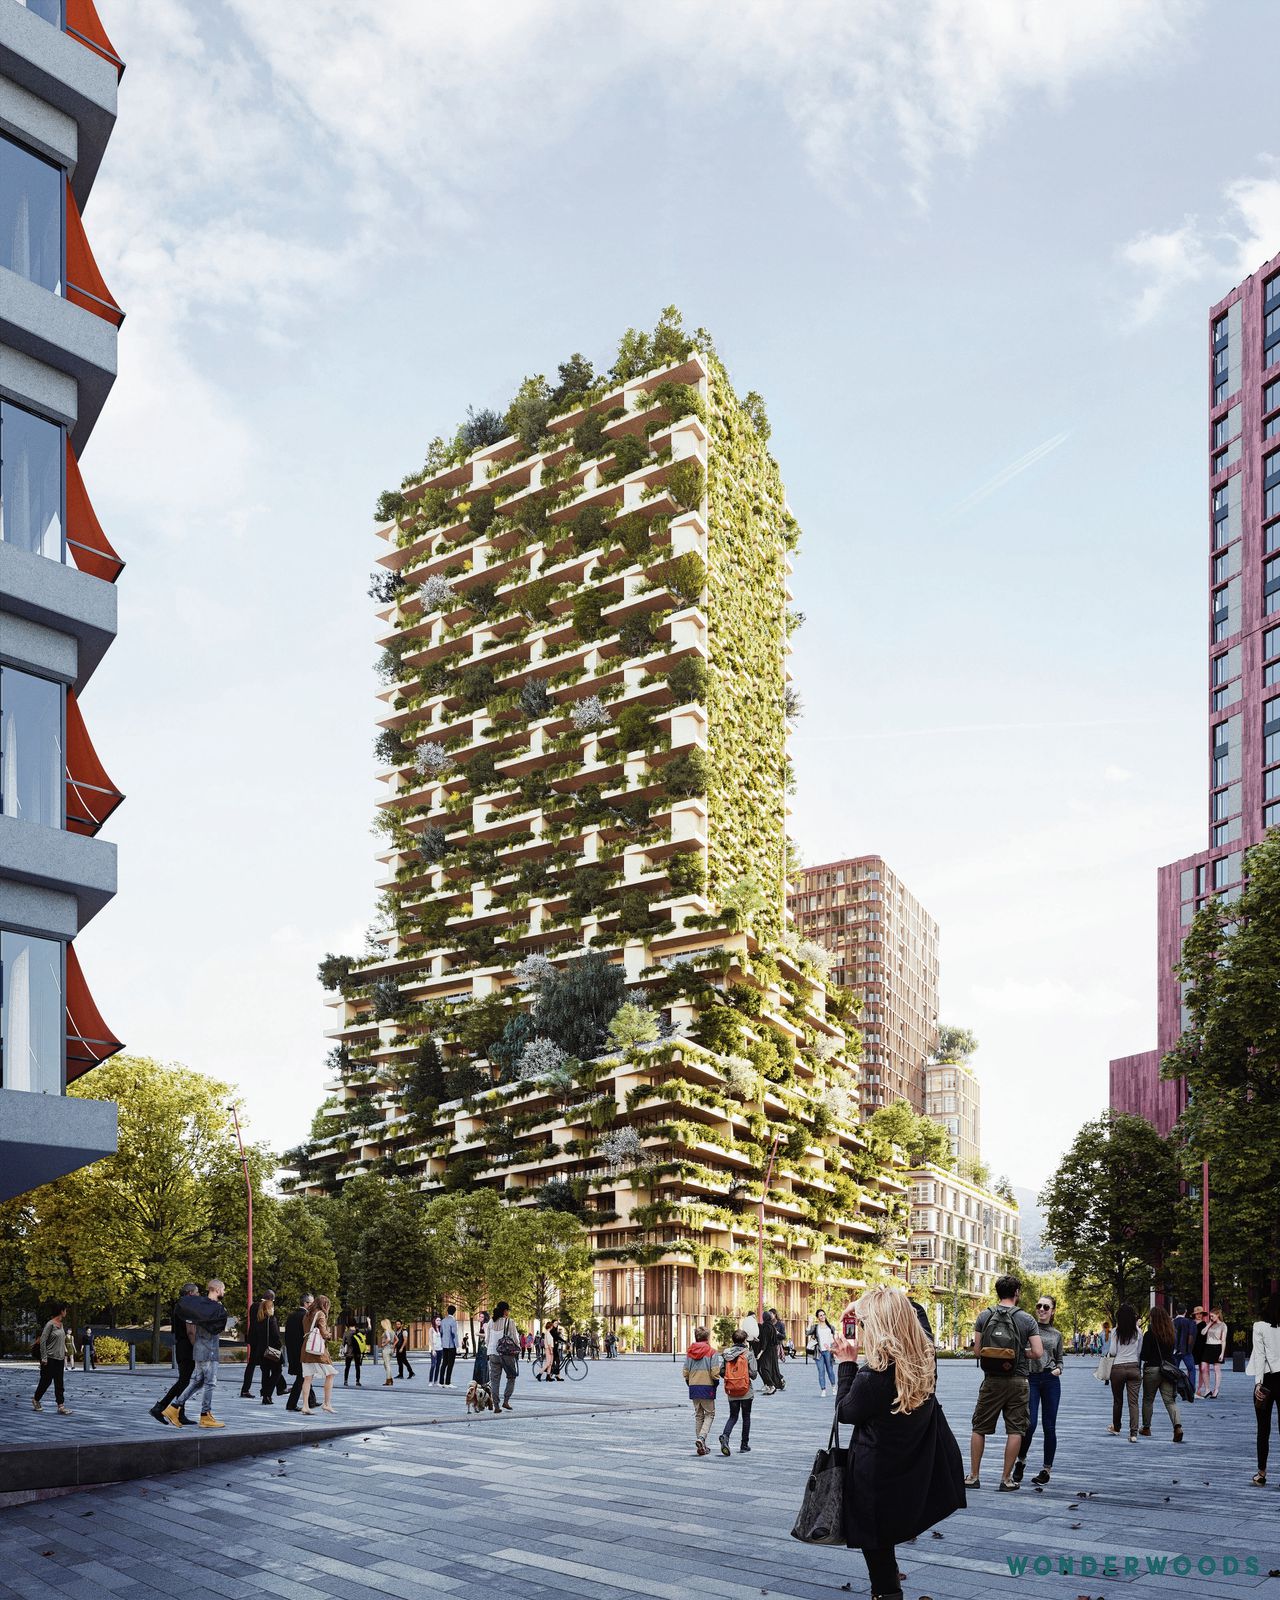 Ontwerp van Wonderwoods, de groene woontorens die dit jaar in Utrecht zullen worden gebouwd.